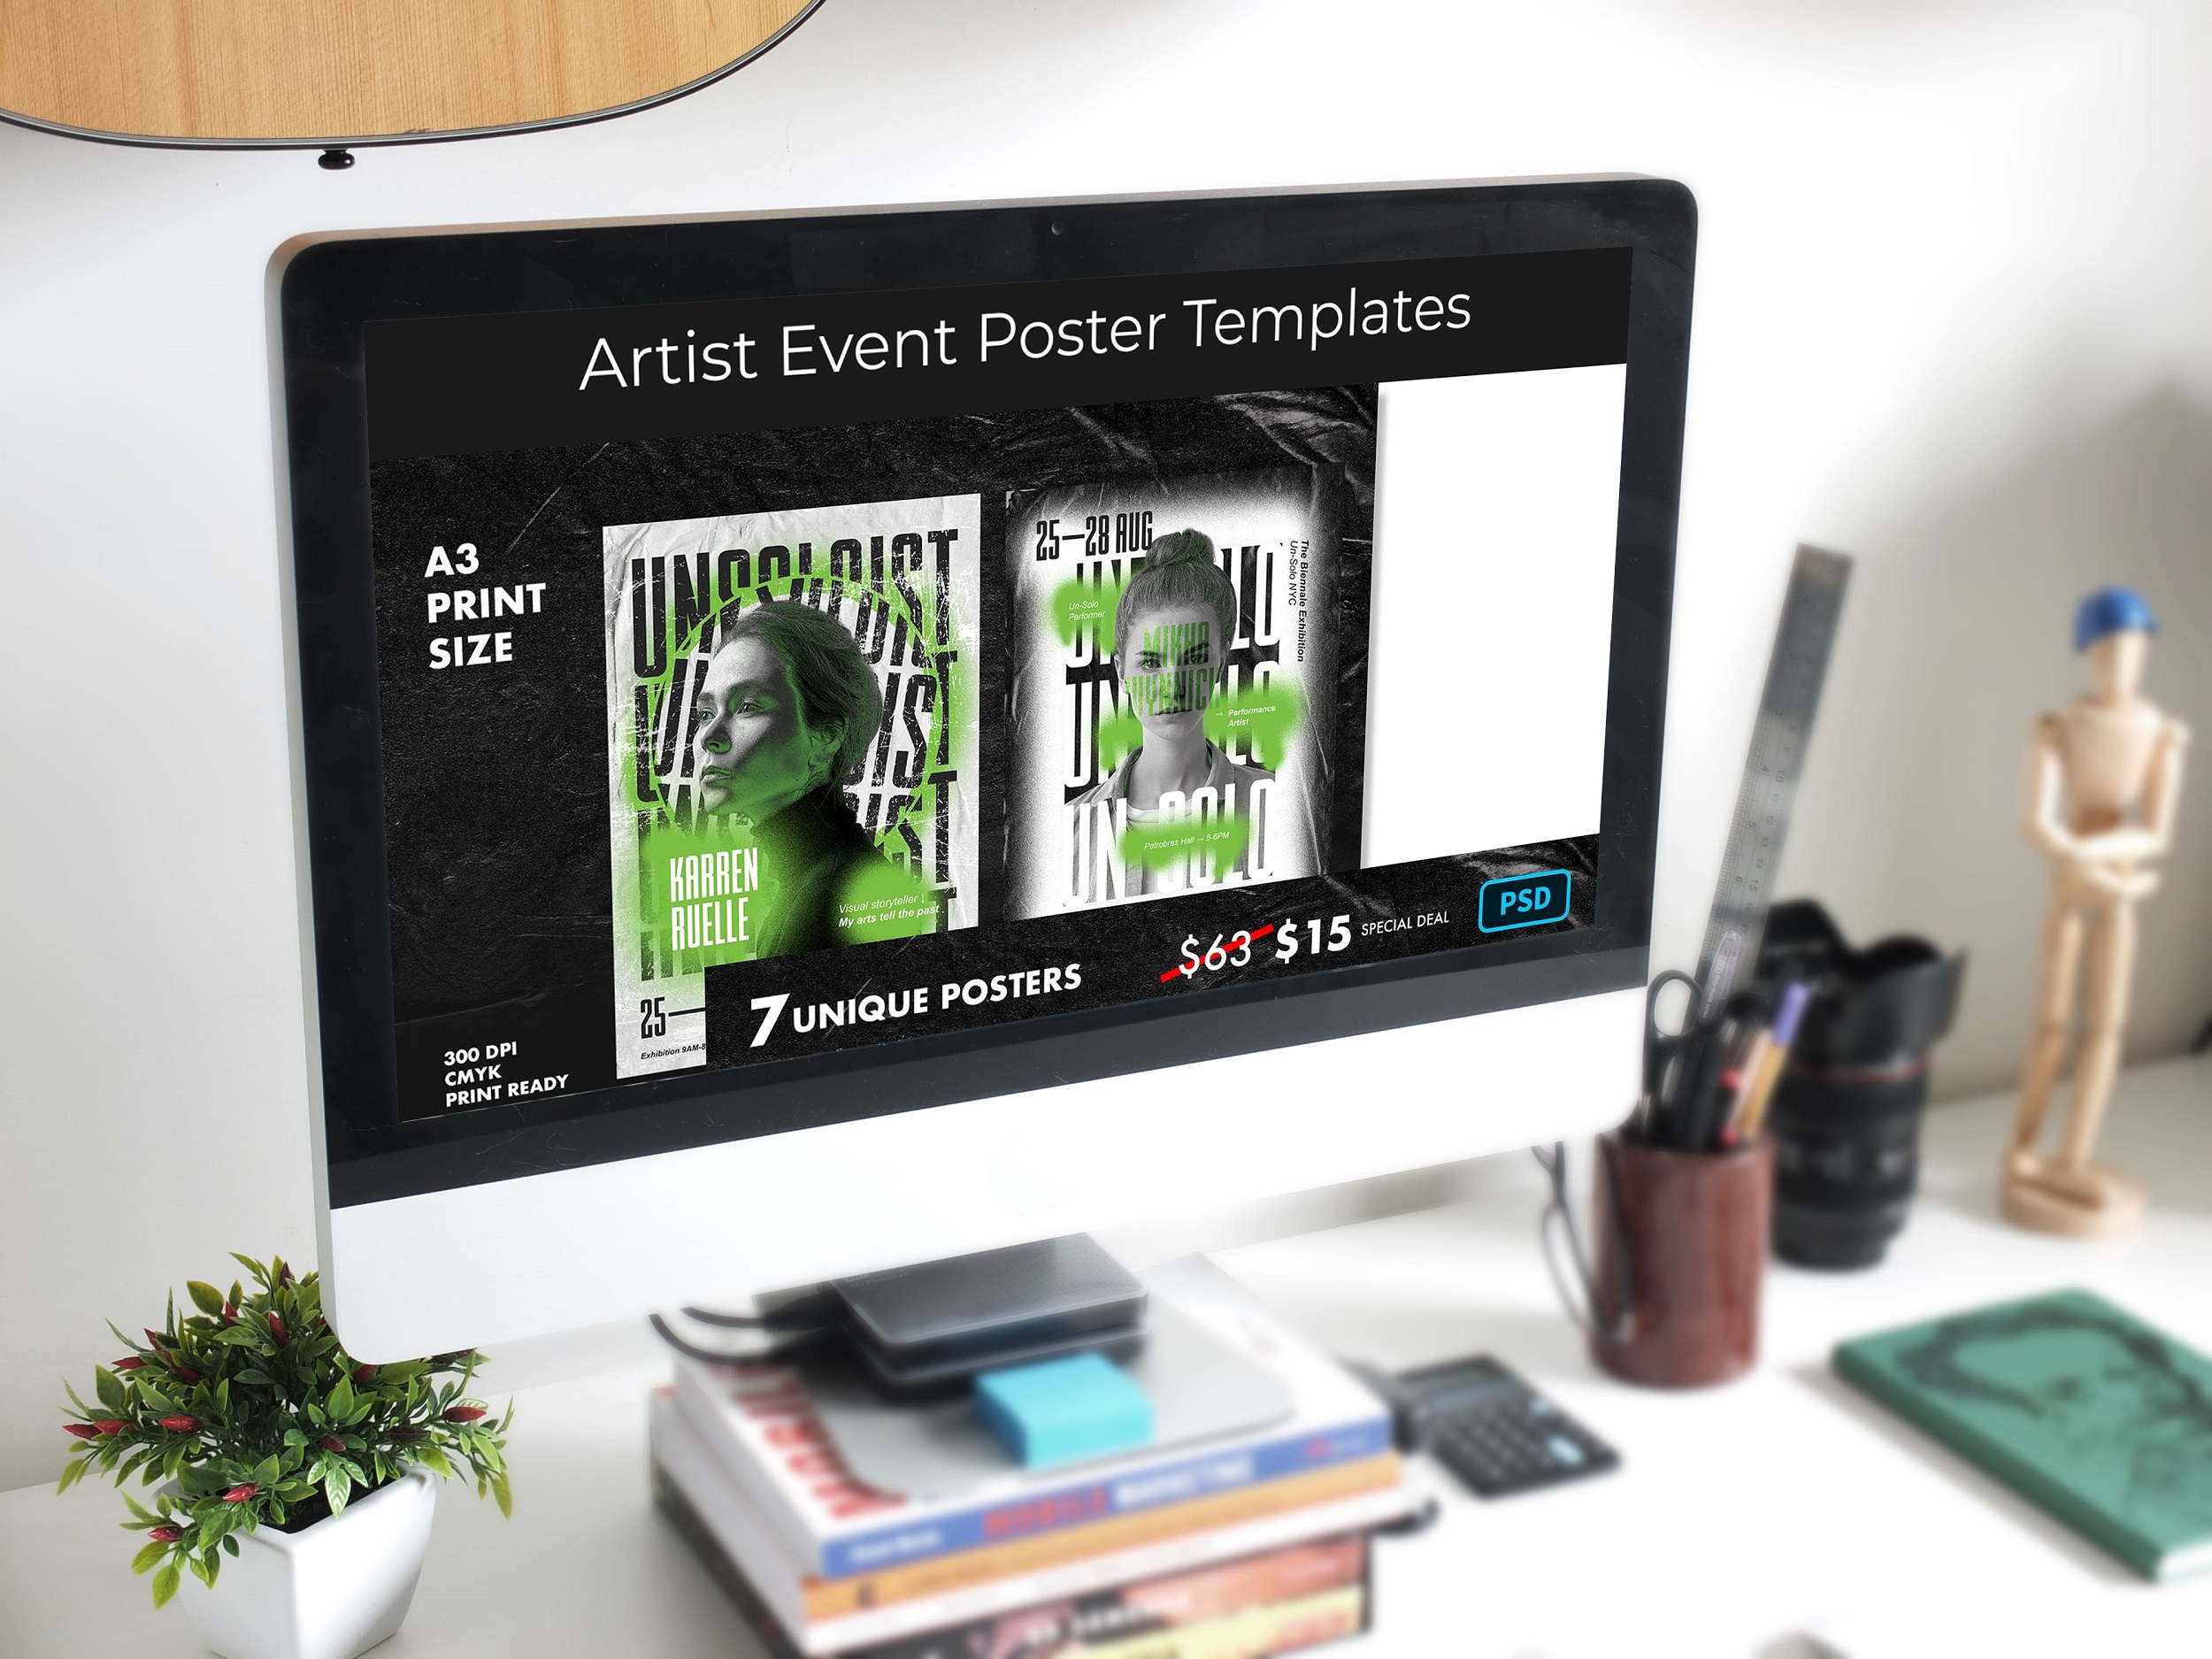 Artist Event Poster Templates desktop mockup.